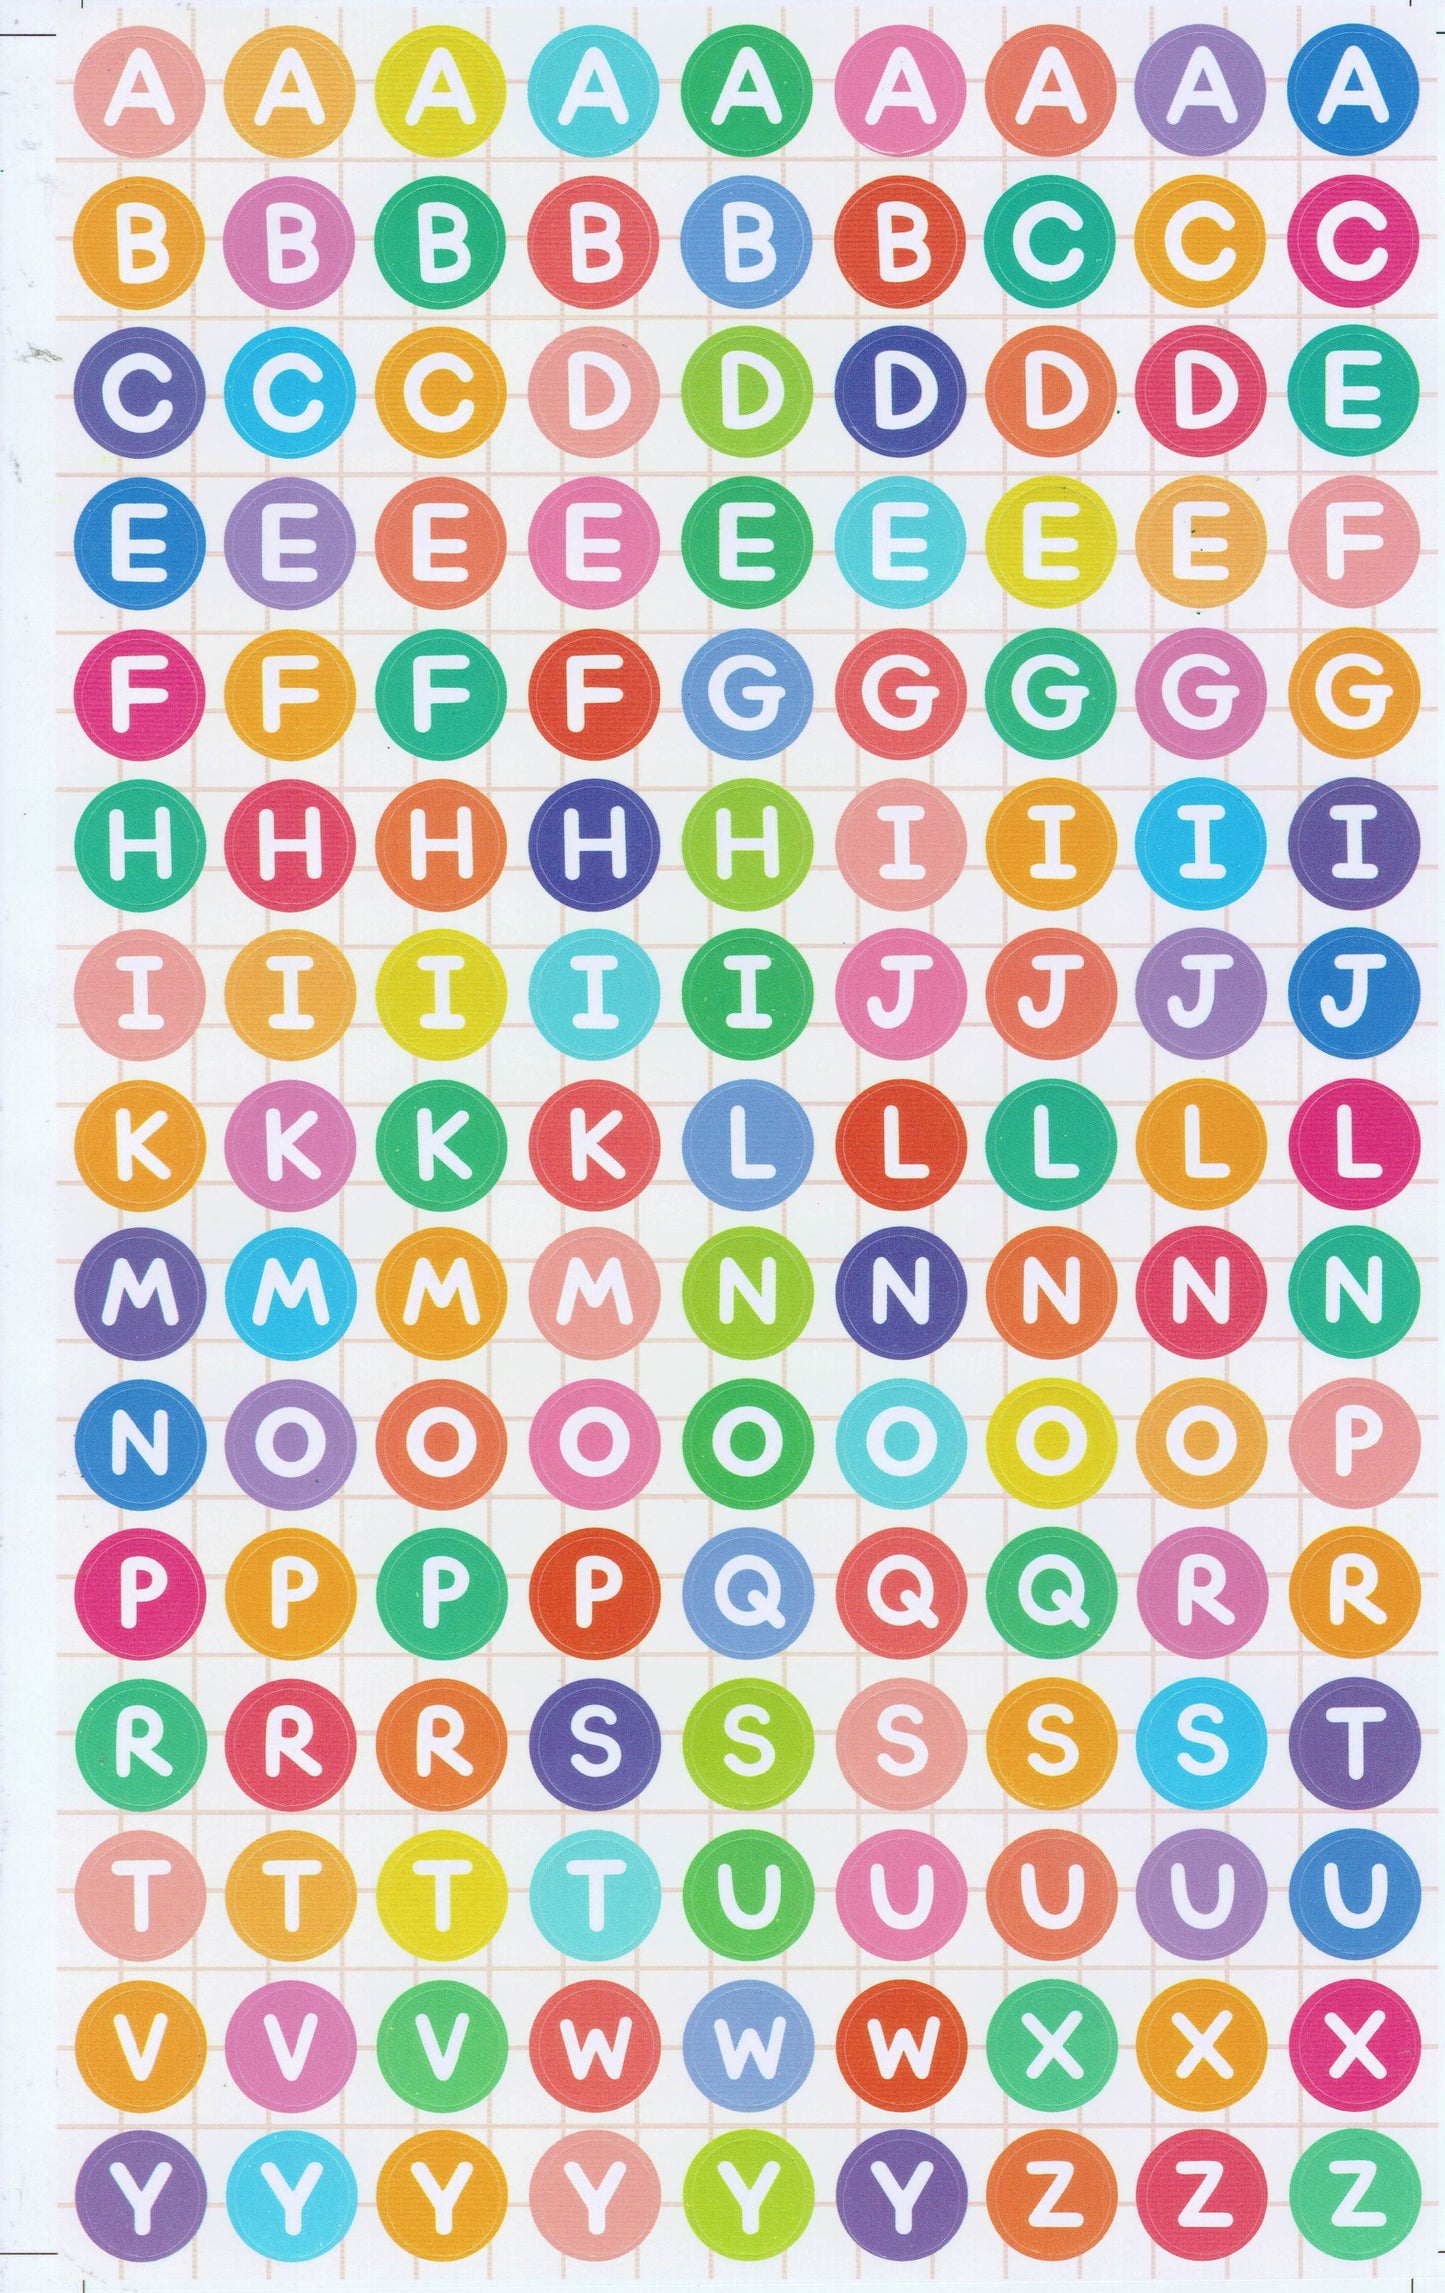 Buchstaben ABC 13 mm hoch Aufkleber Sticker für Büro Ordner Kinder Basteln Kindergarten Geburtstag 1 Bogen 515